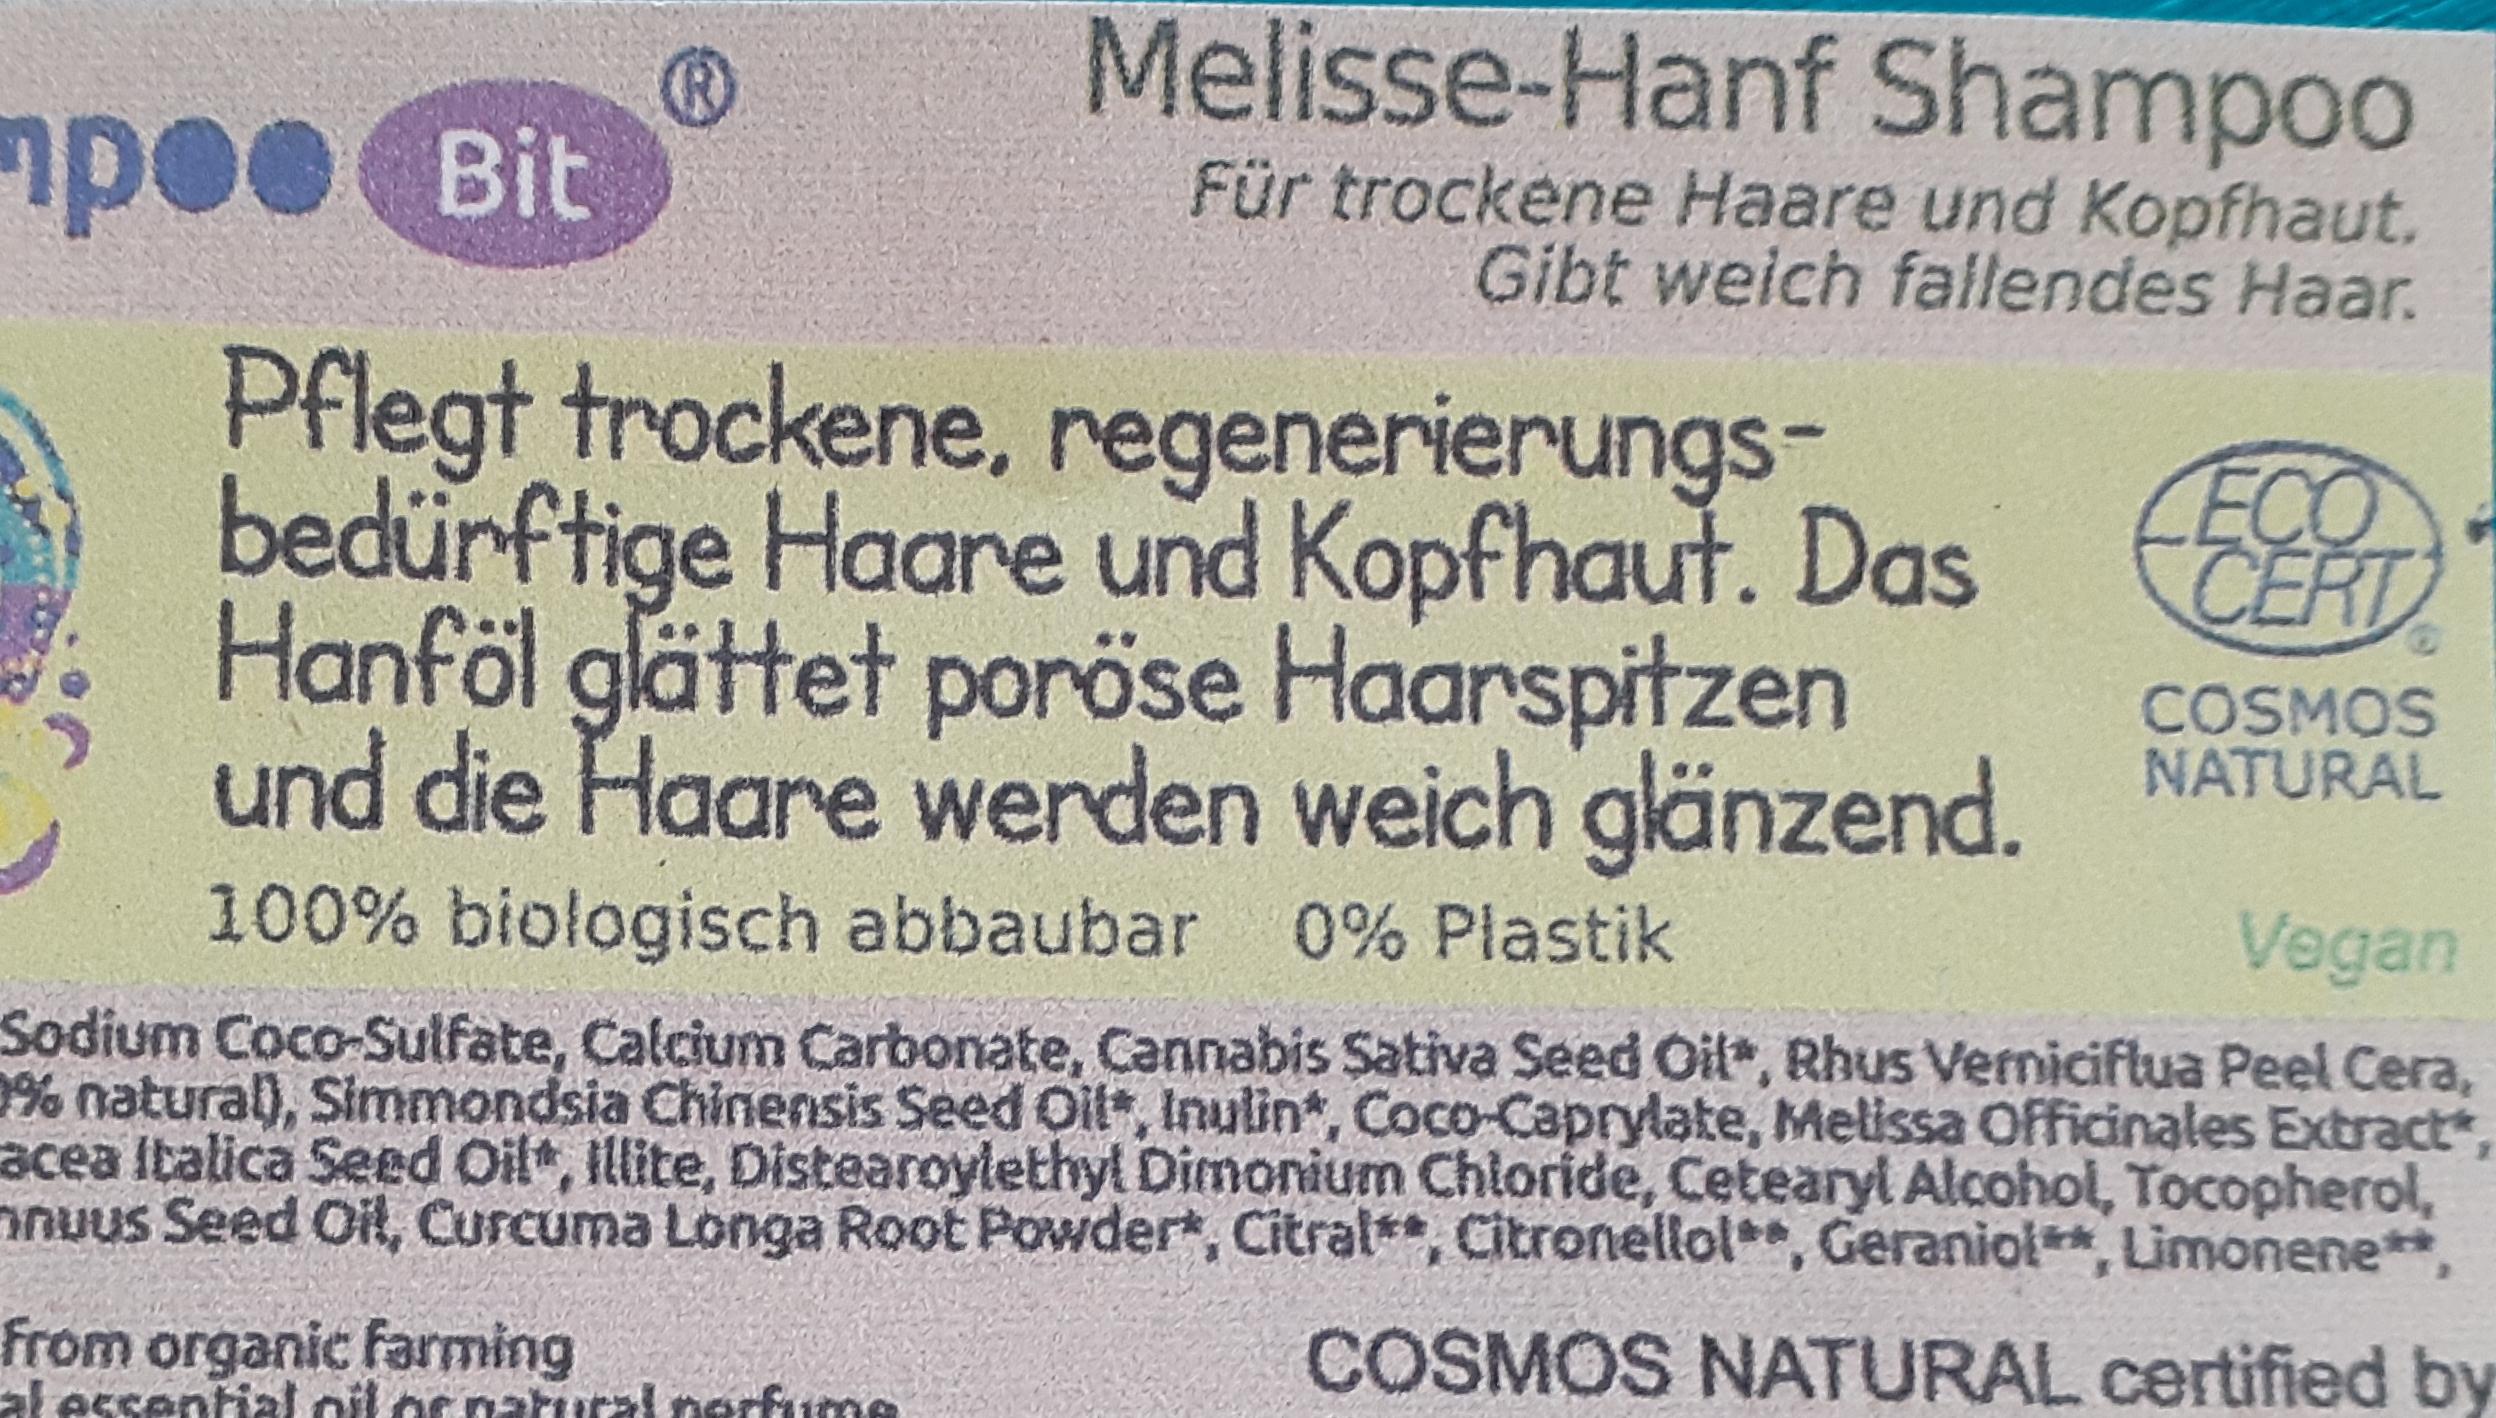 Shampoo Bit von Rosenrot, Melisse Hanf